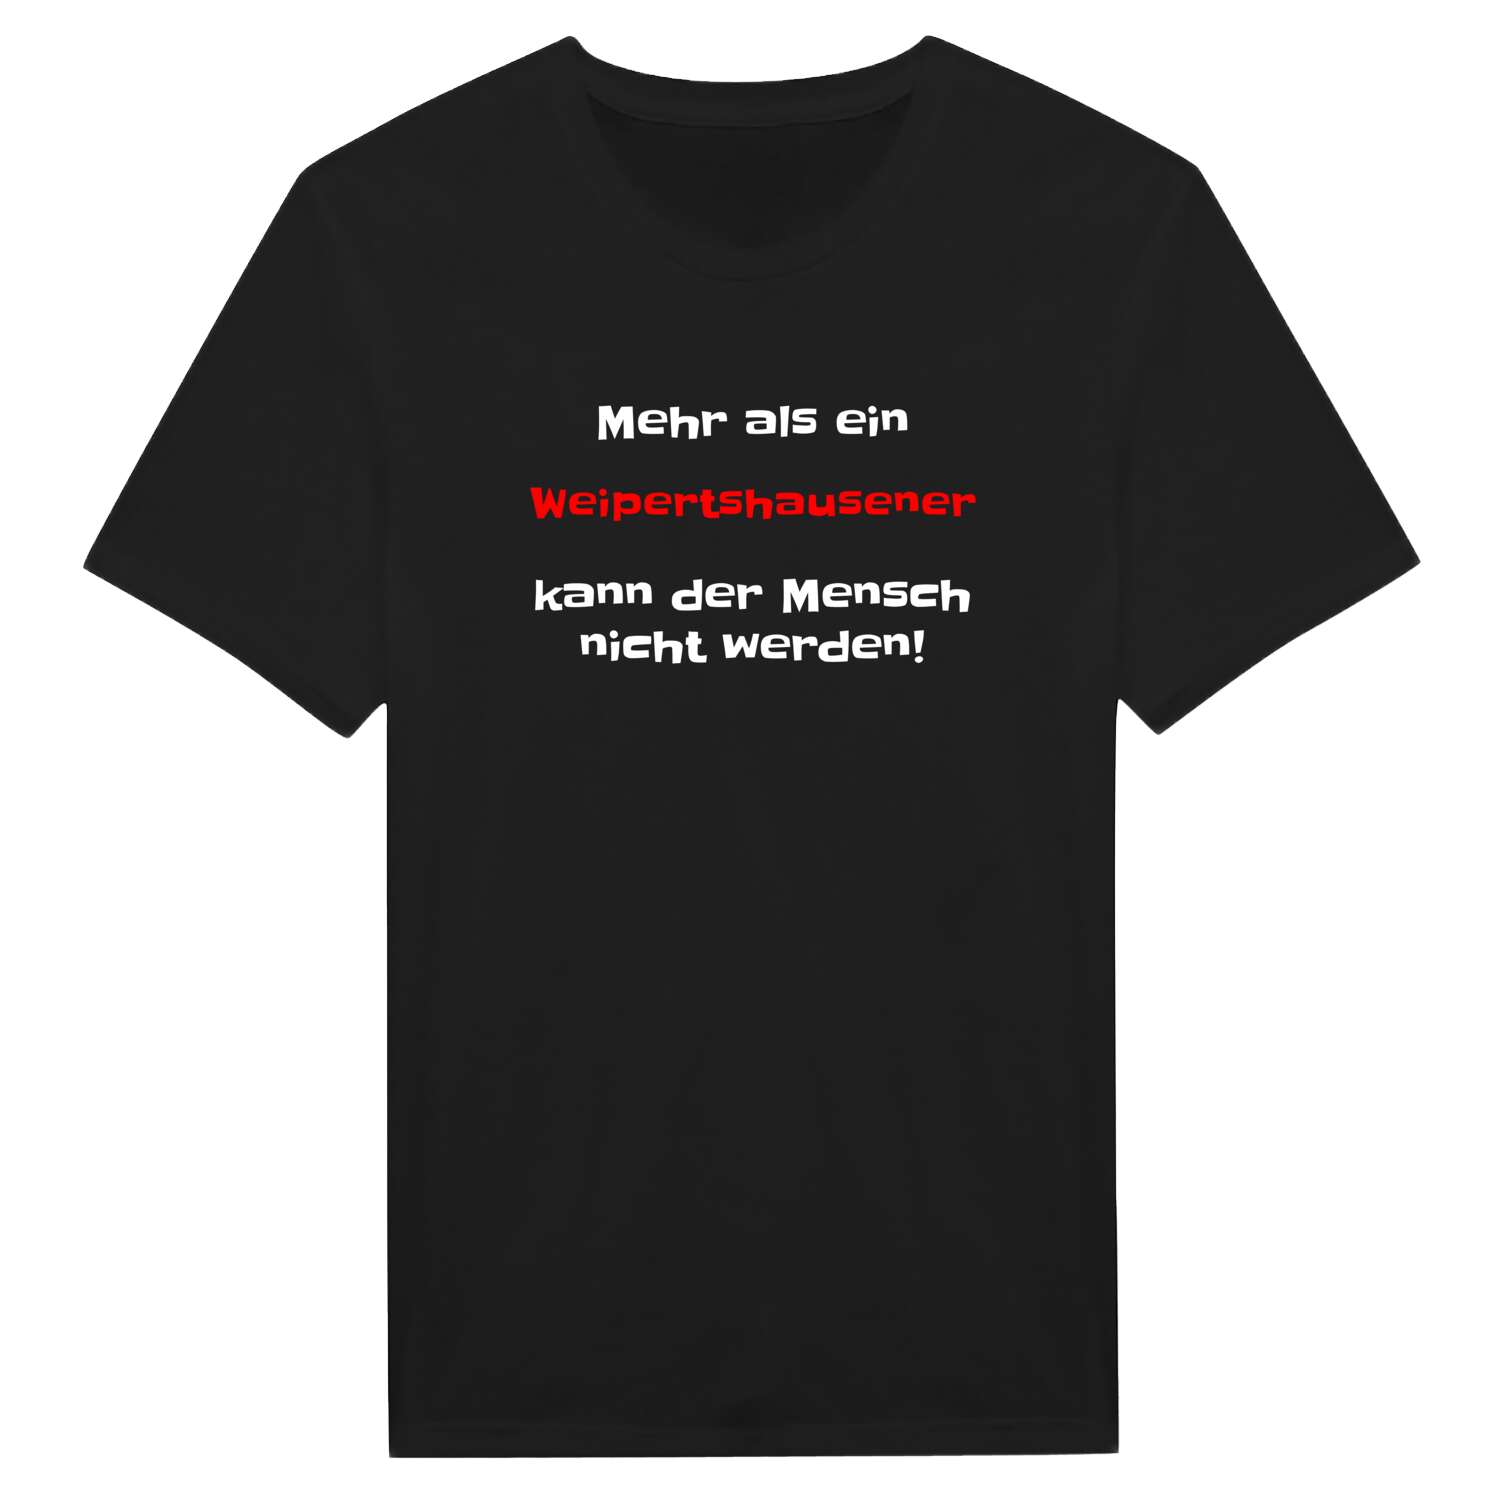 Weipertshausen T-Shirt »Mehr als ein«